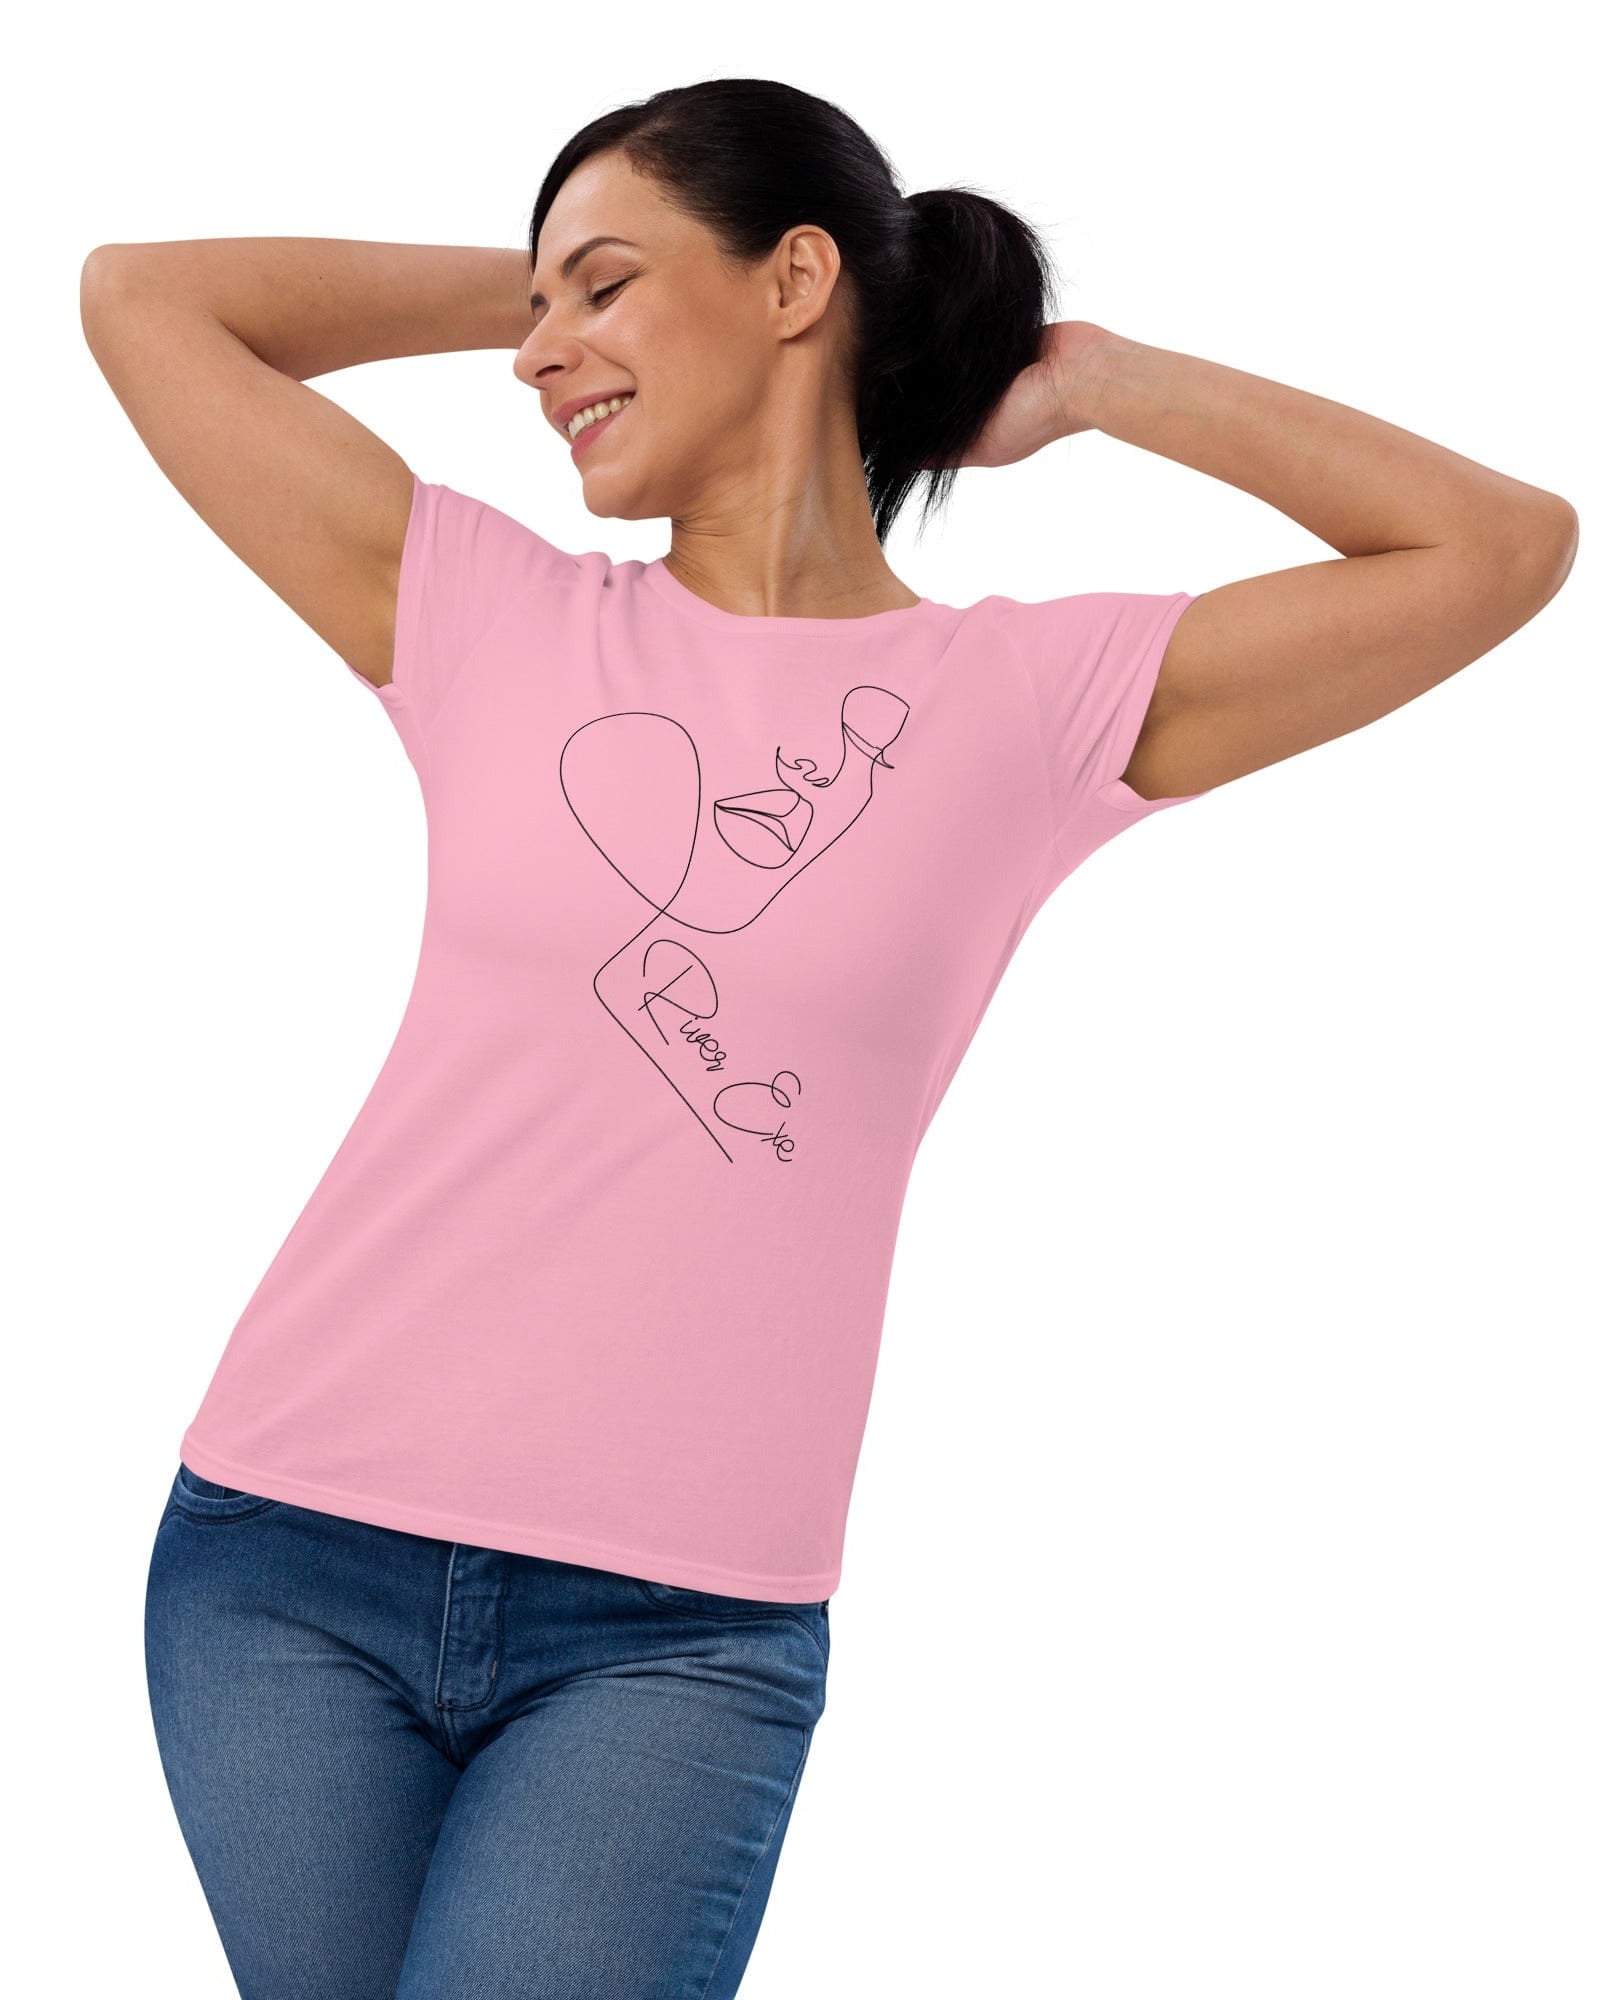 River Exe Women's Short-Sleeve T-shirt | Exeter Gift Shop Women's Shirts Jolly & Goode